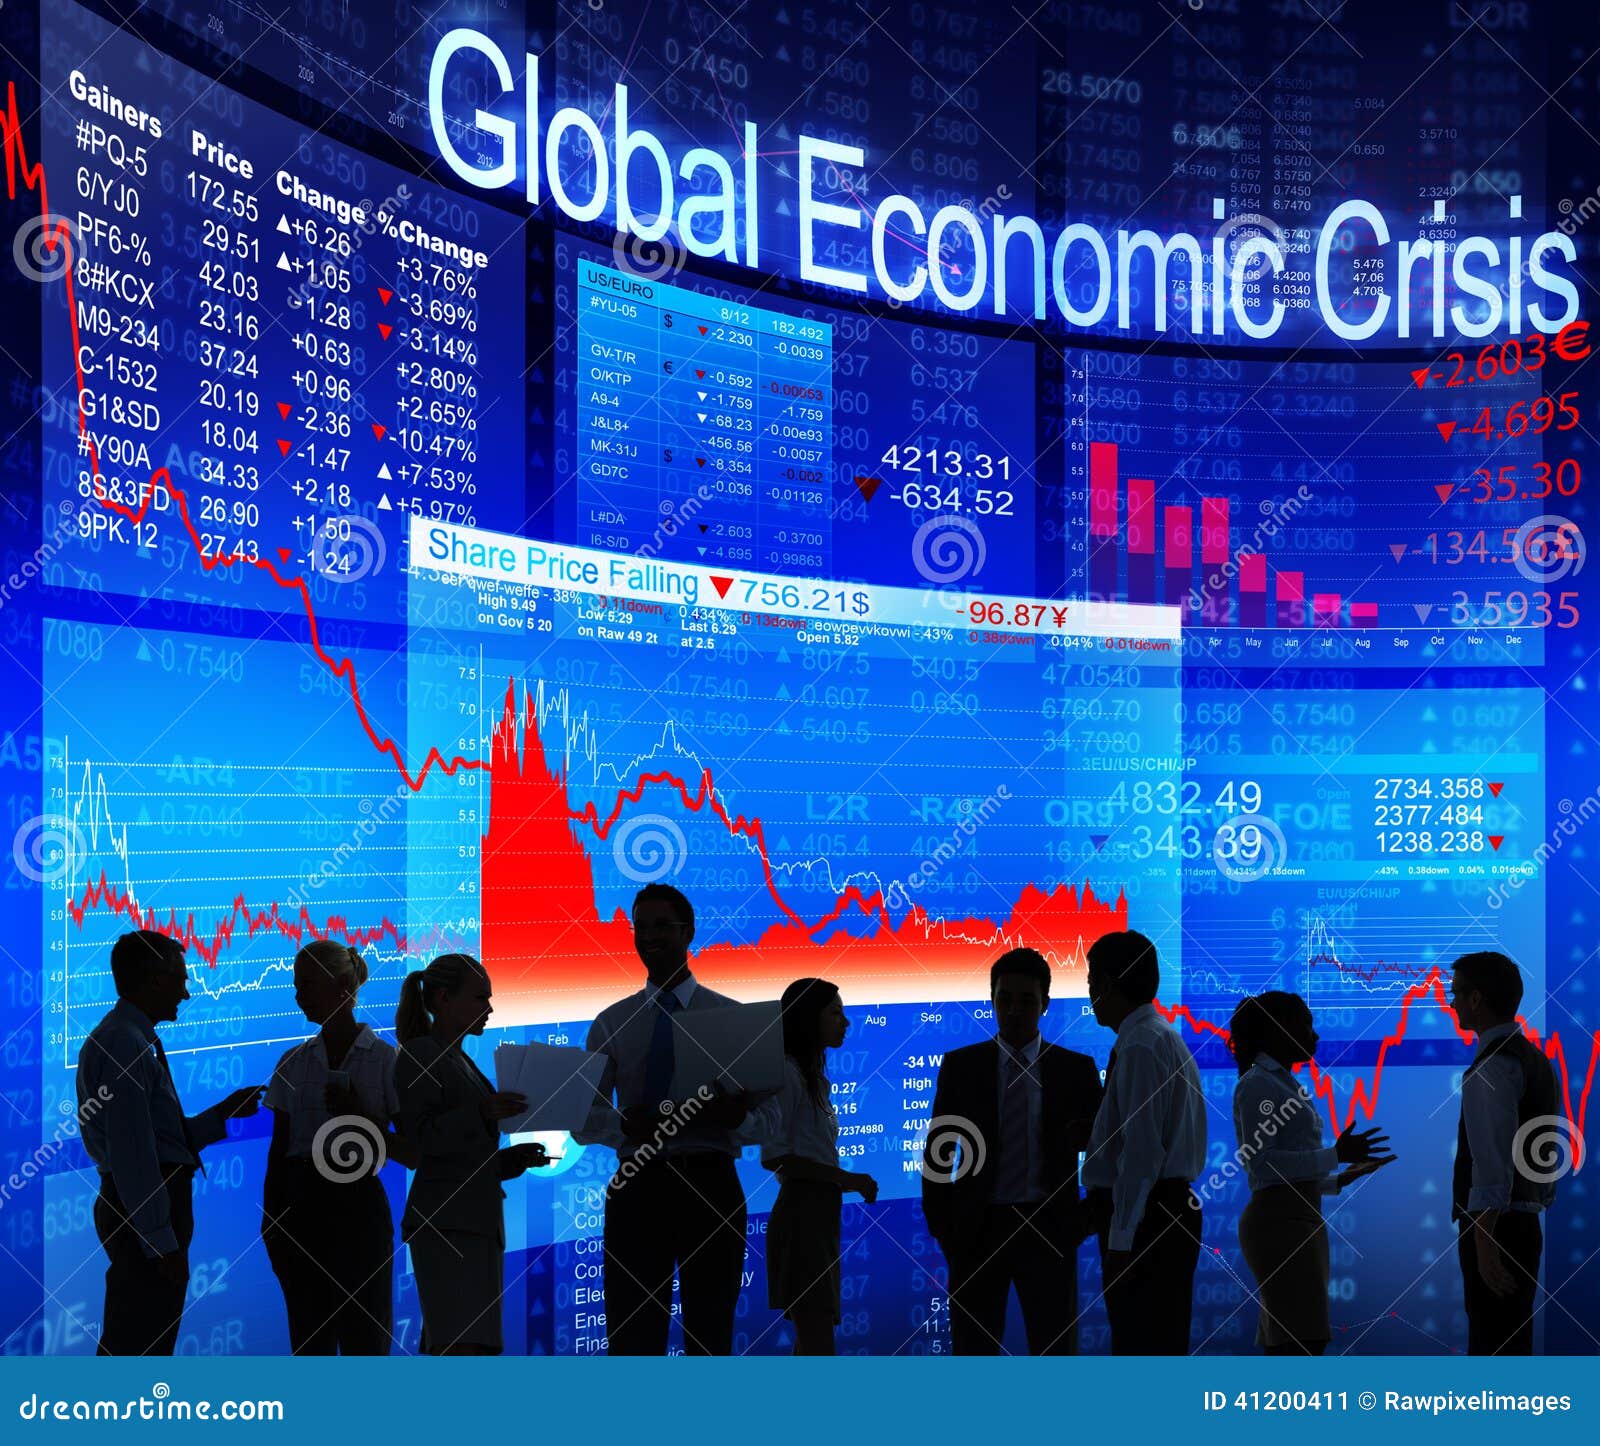 Thesis global economic crisis